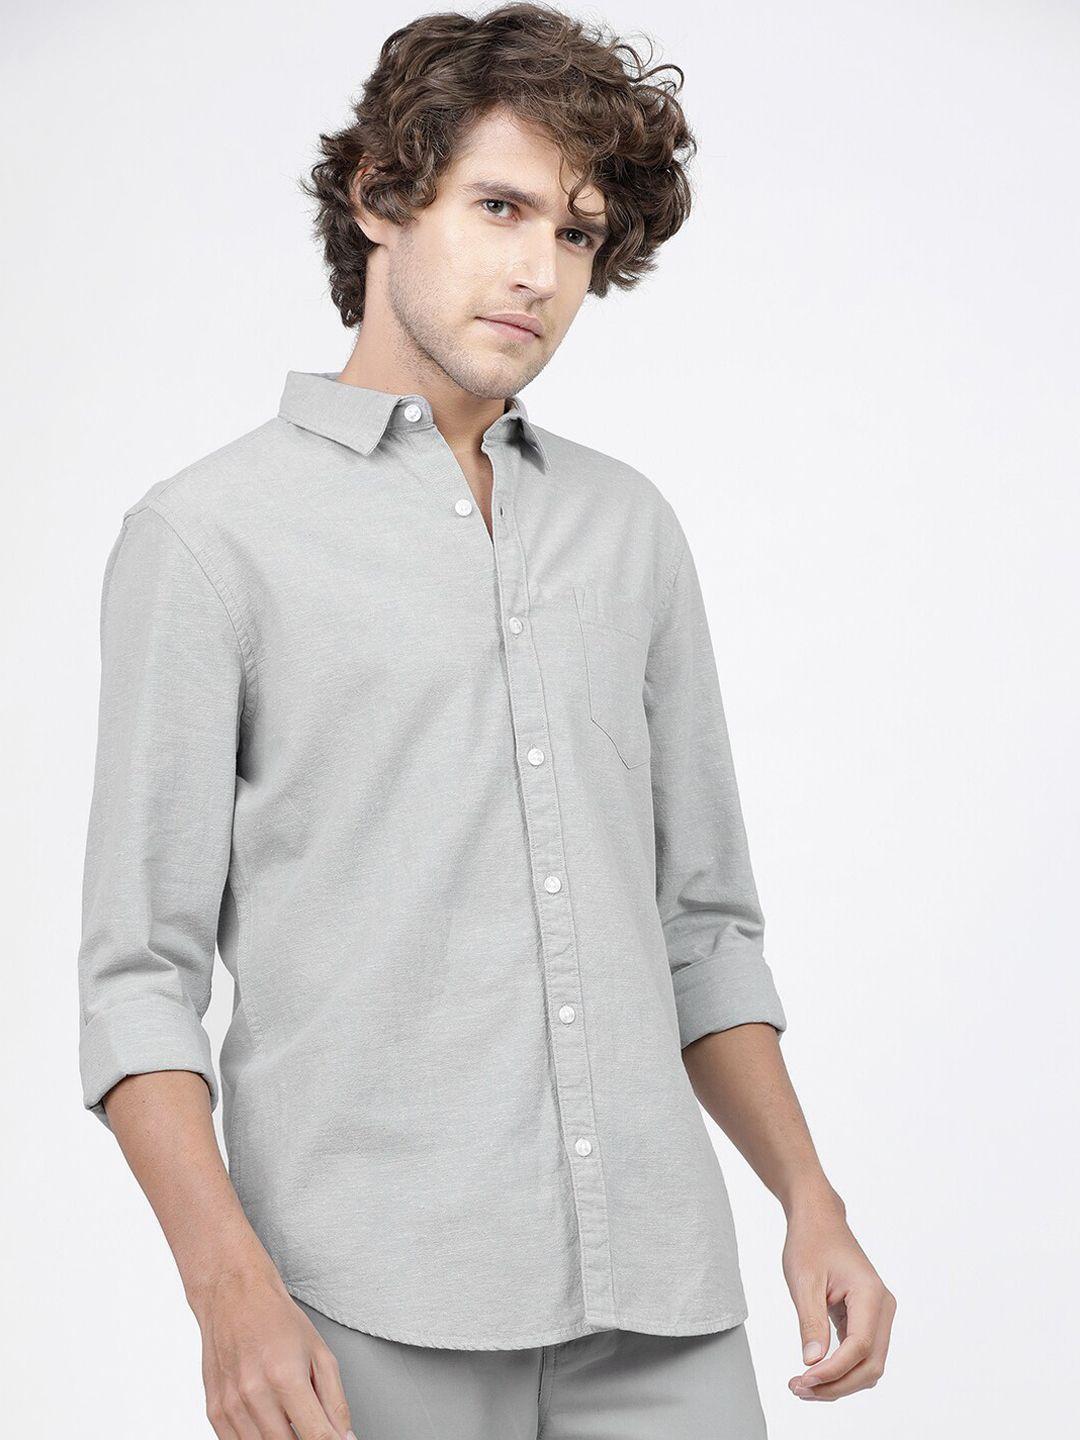 ketch-men-grey-slim-fit-opaque-casual-shirt